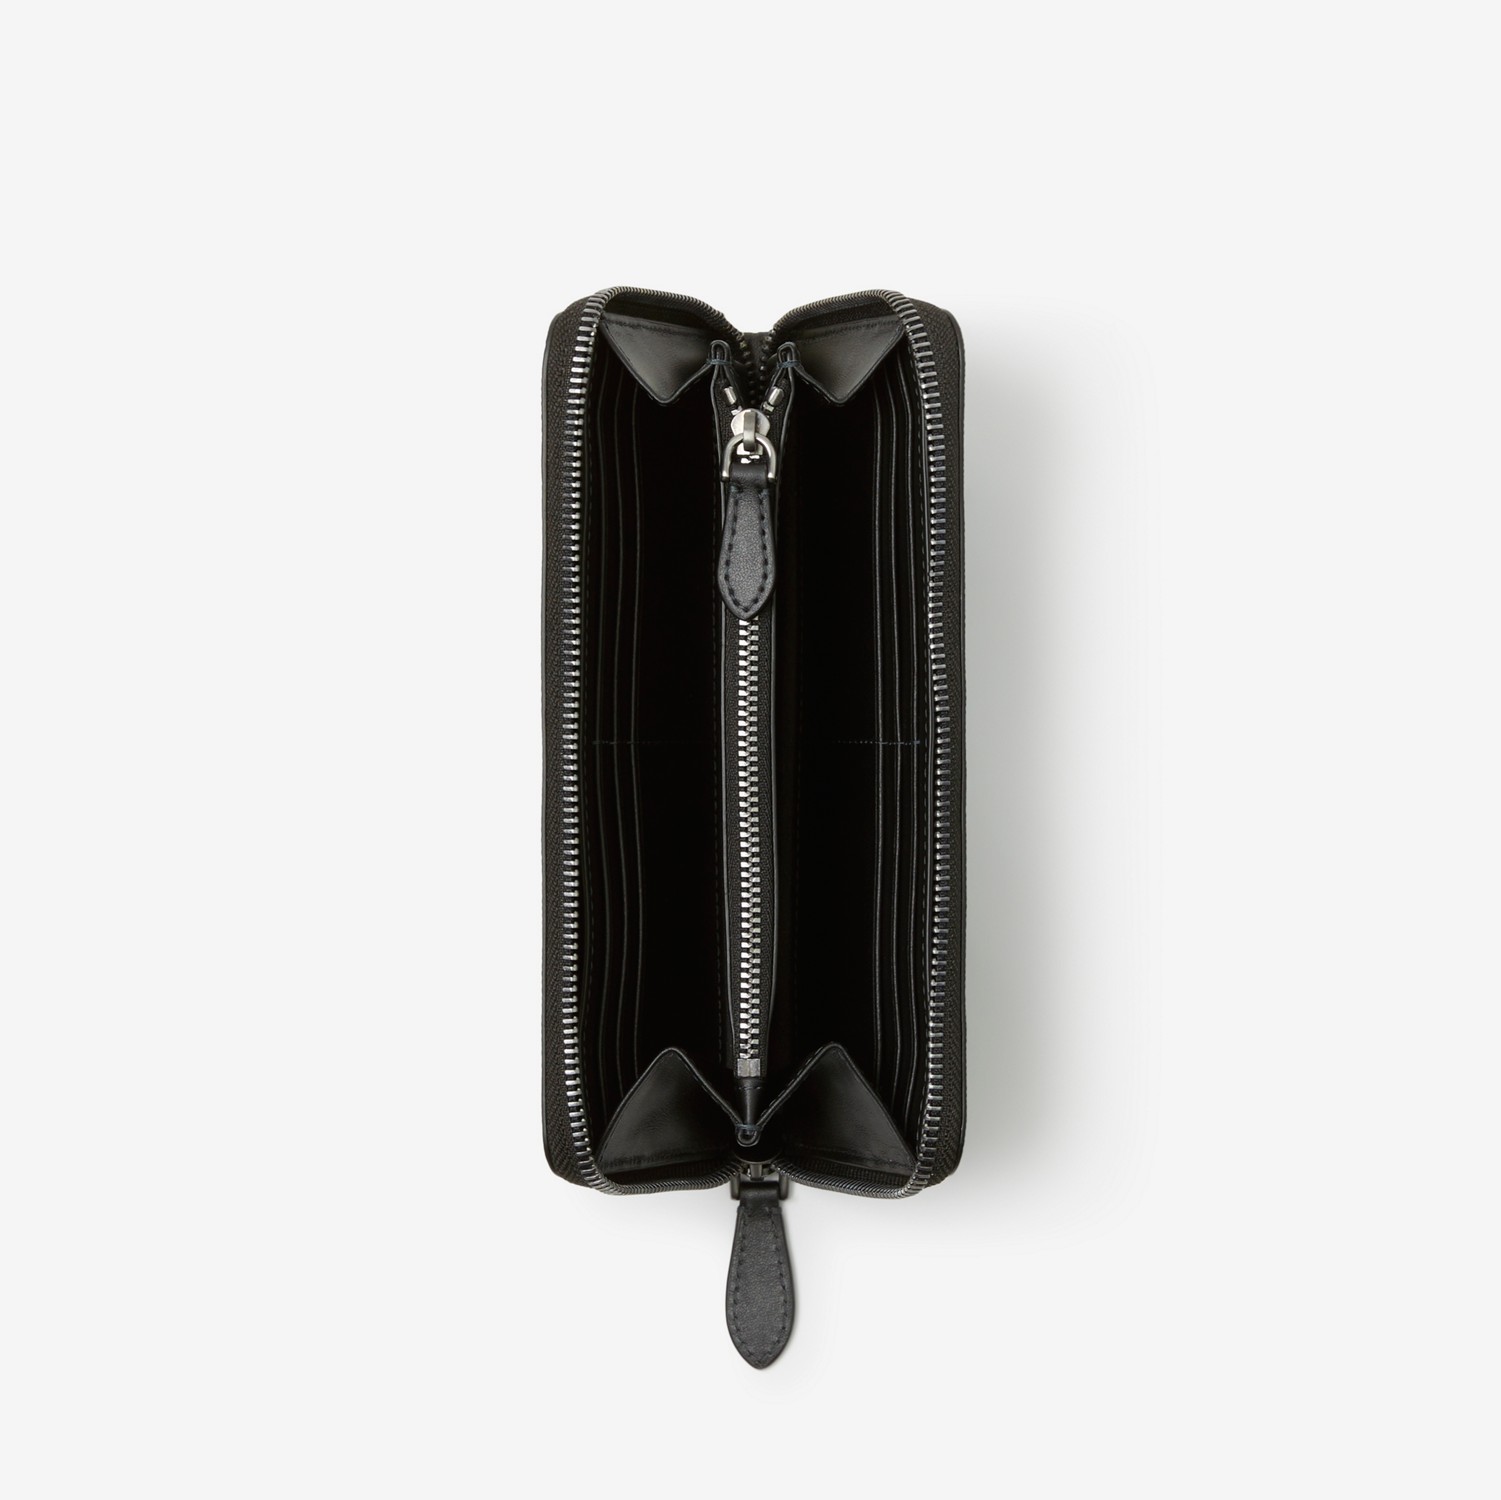 Brieftasche mit umlaufendem Reißverschluss aus Karogewebe in Anthrazit und Leder